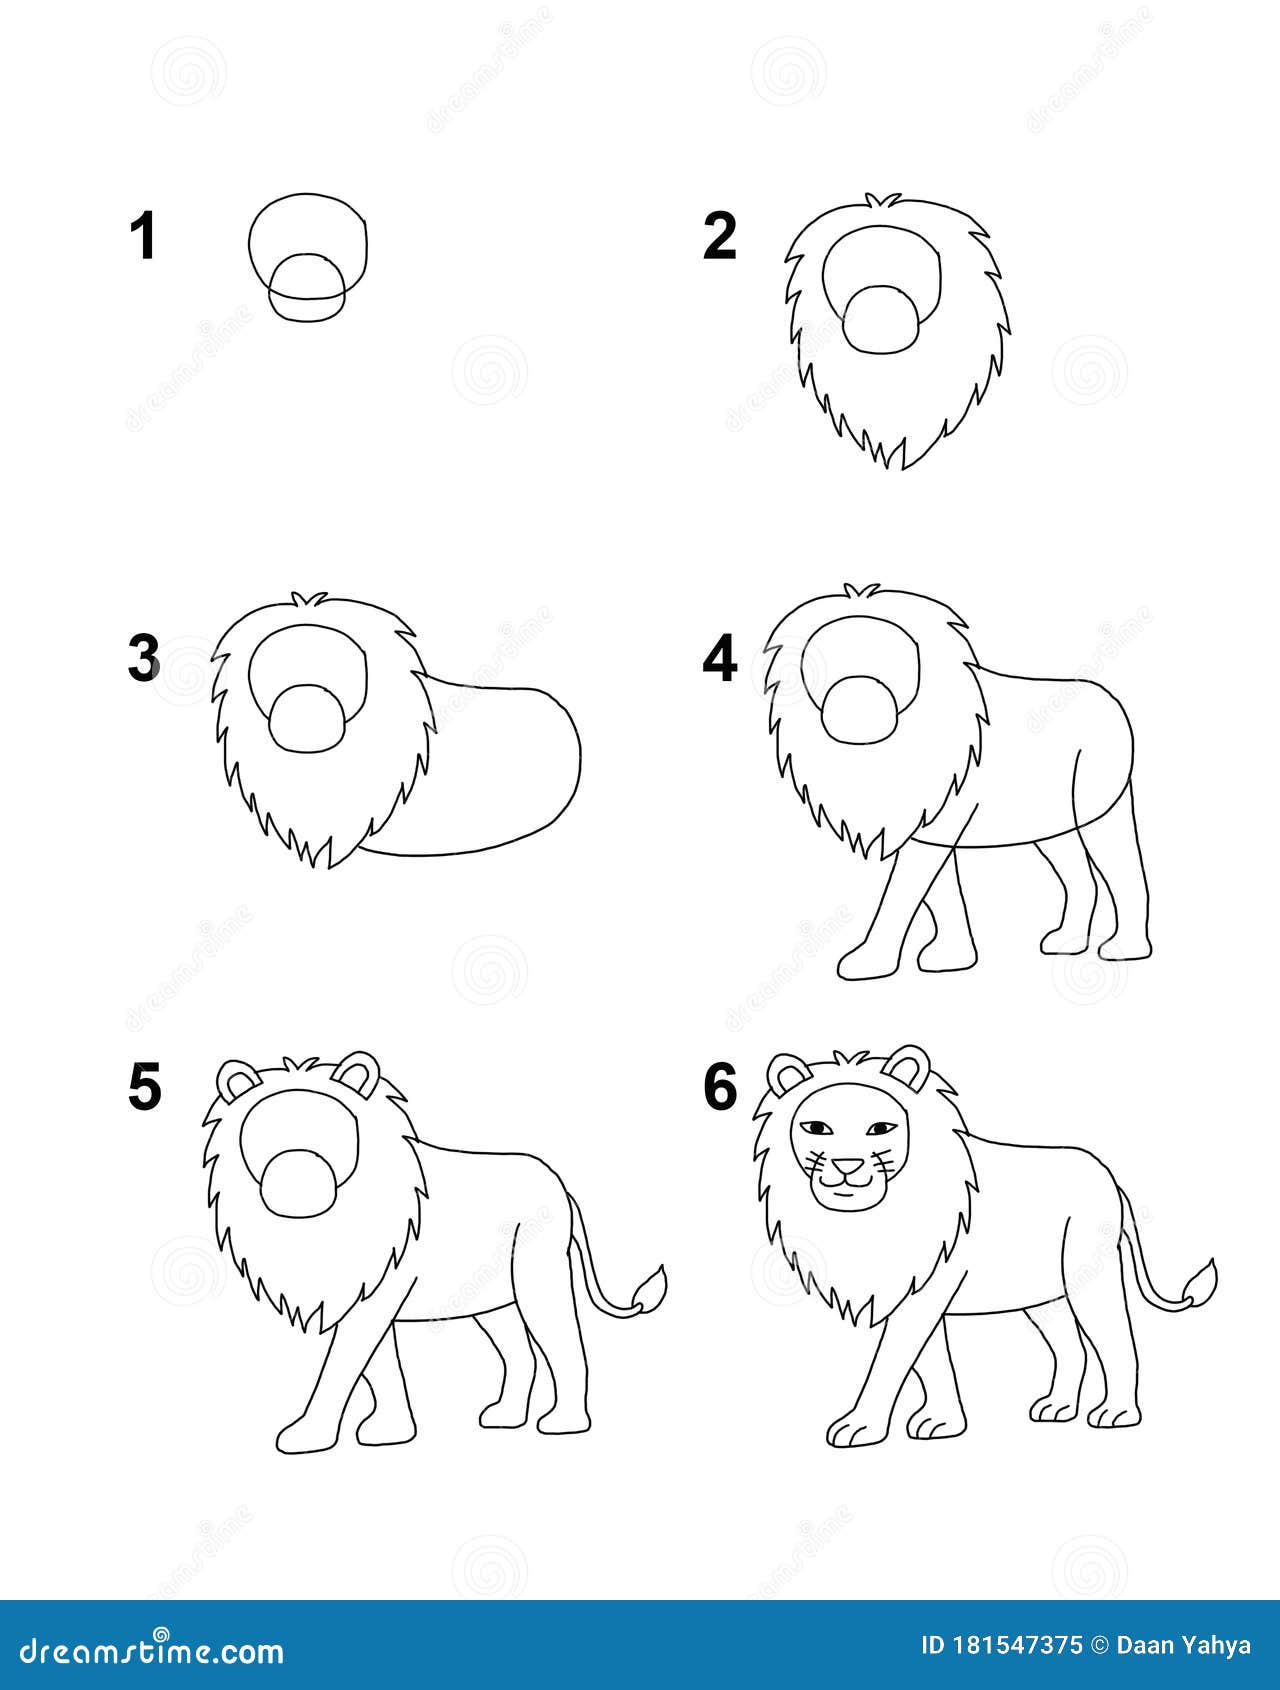 How To Draw A Lion Cartoon - Crazyscreen21